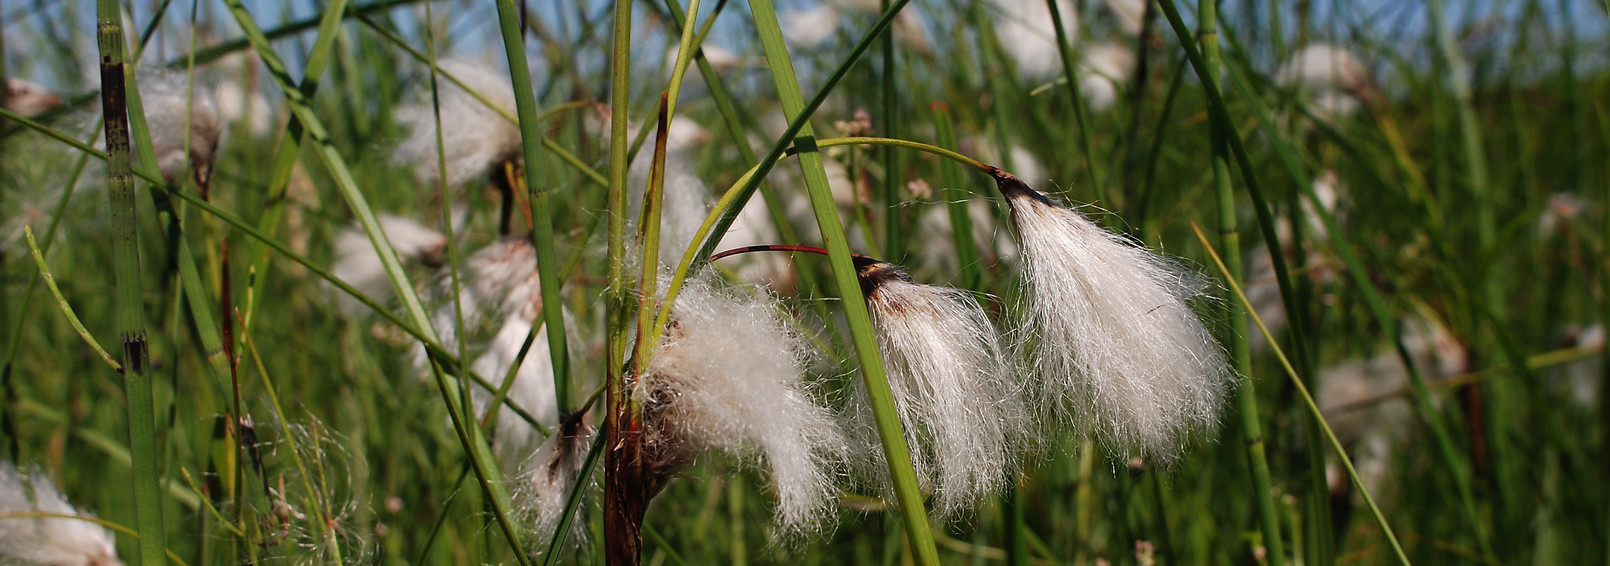 Cotton grass